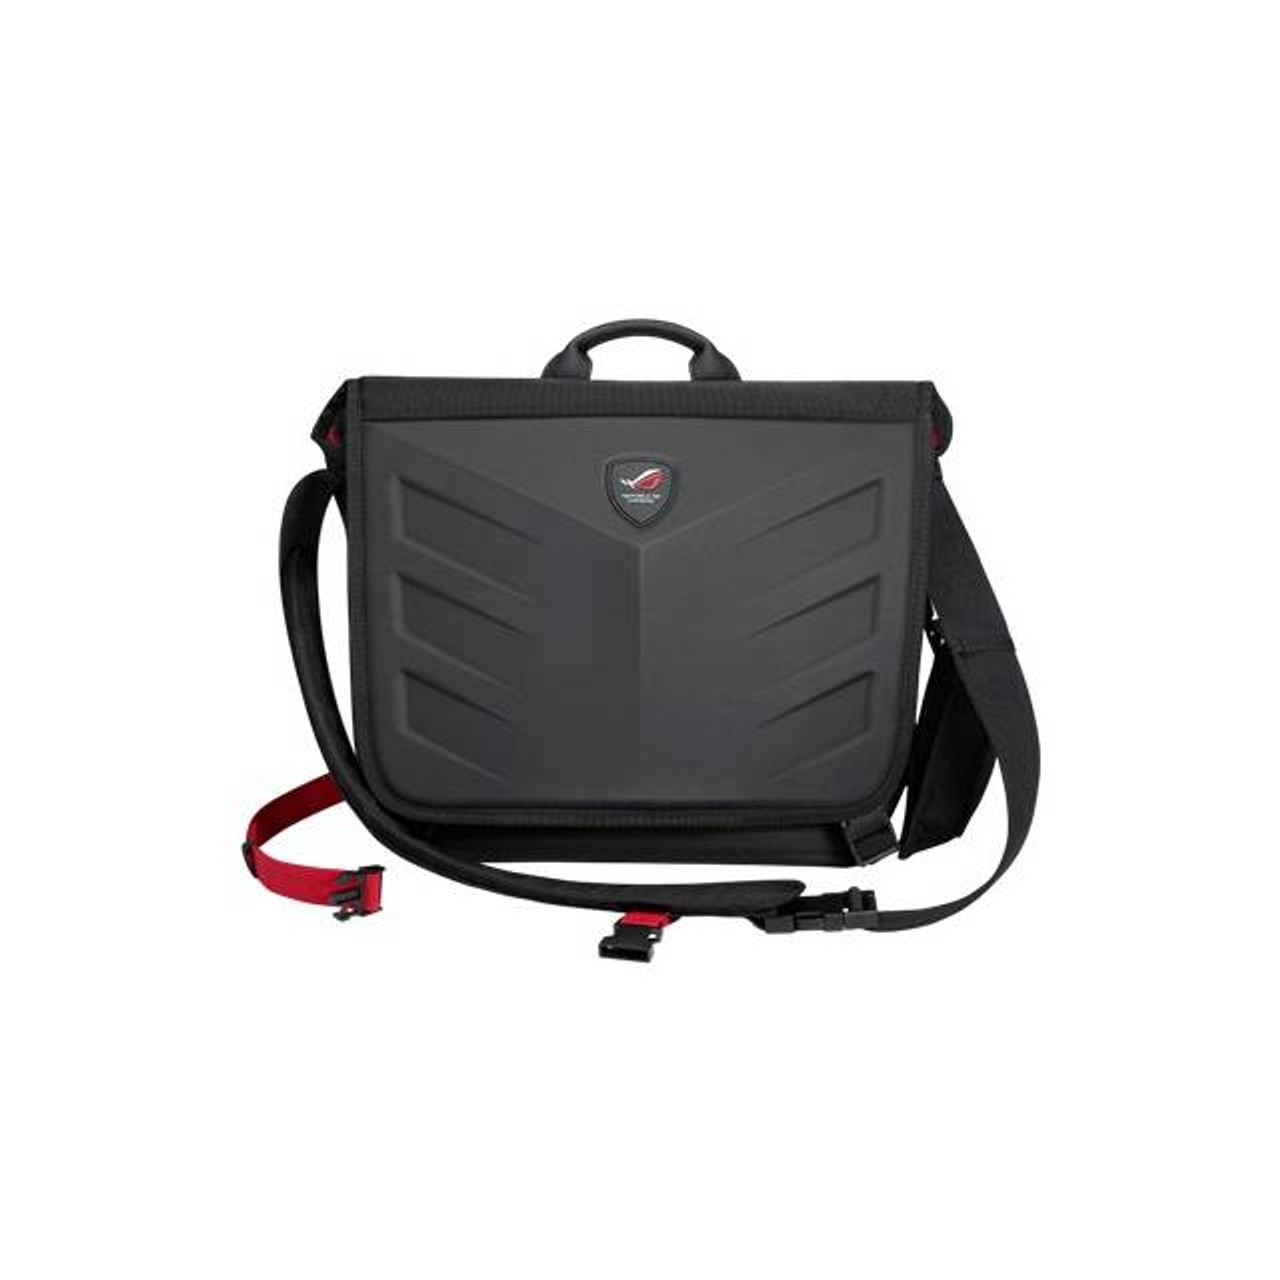 ASUS 90XB0310-BBP000 Rog Ranger Messenger Bag for 15.6 inch Device (Black)